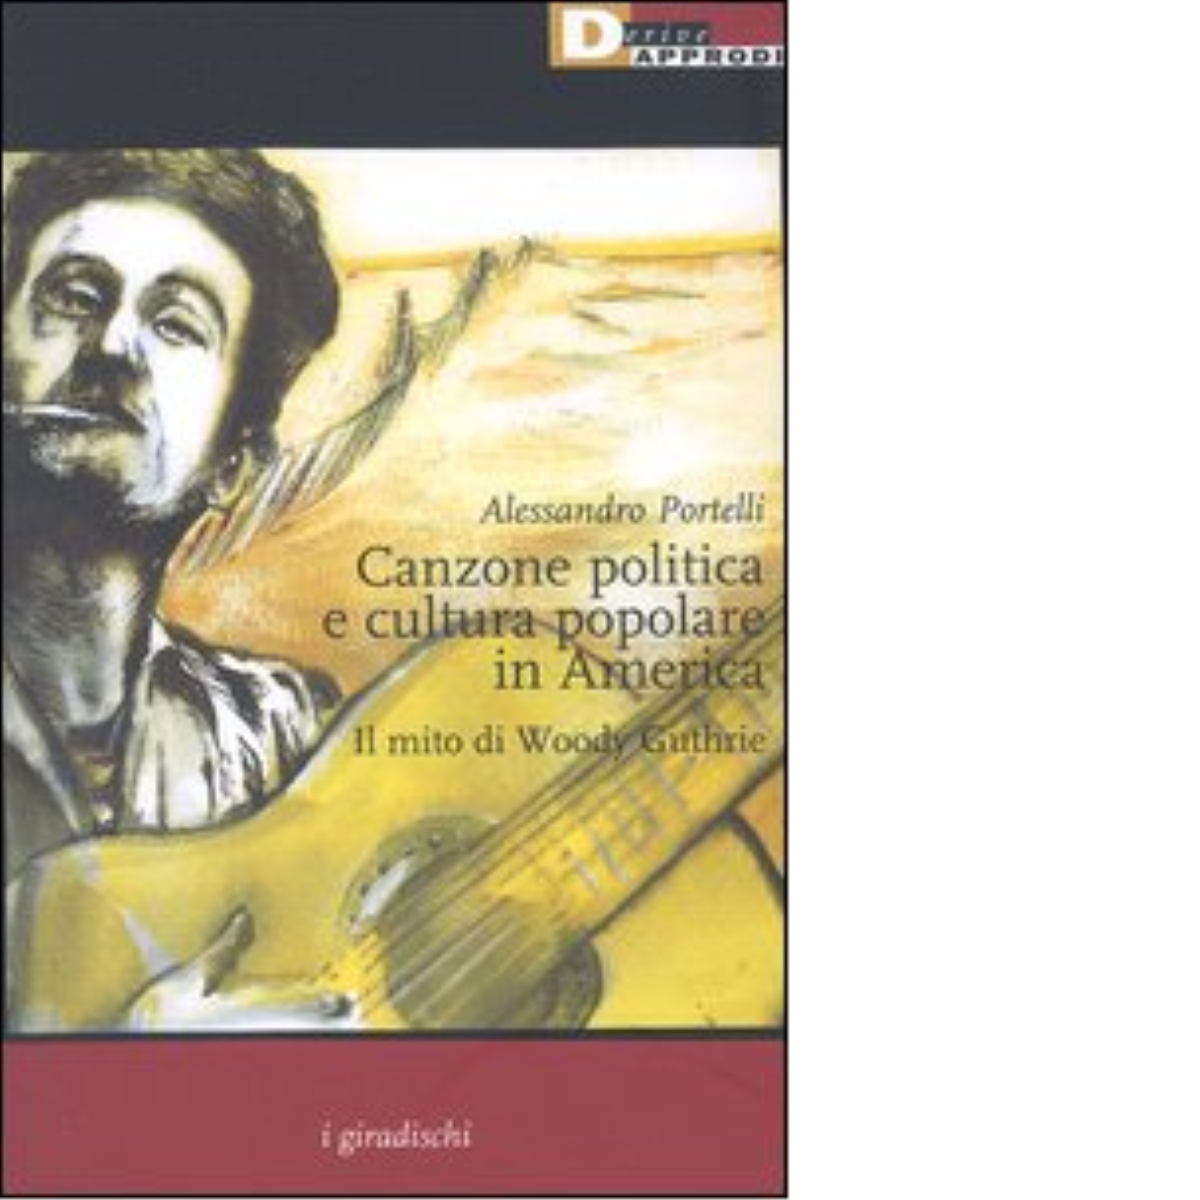 Canzone politica e cultura popolare in America - Alessandro Portelli,2004 libro usato